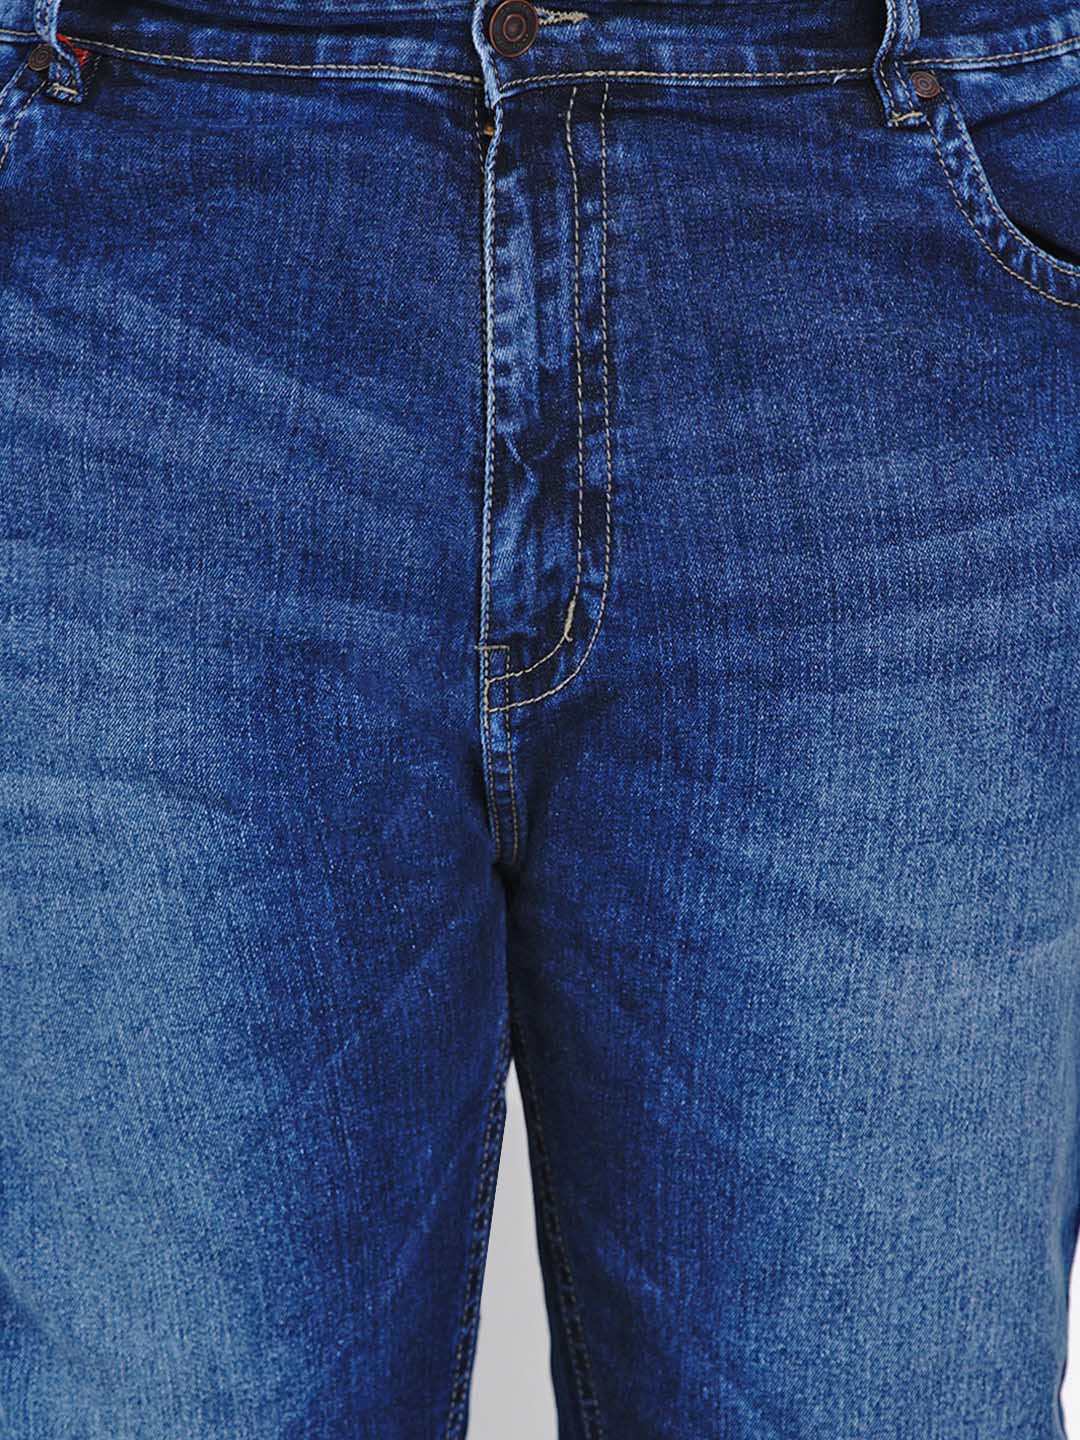 bottomwear/jeans/JPJ2514/jpj2514-3.jpg